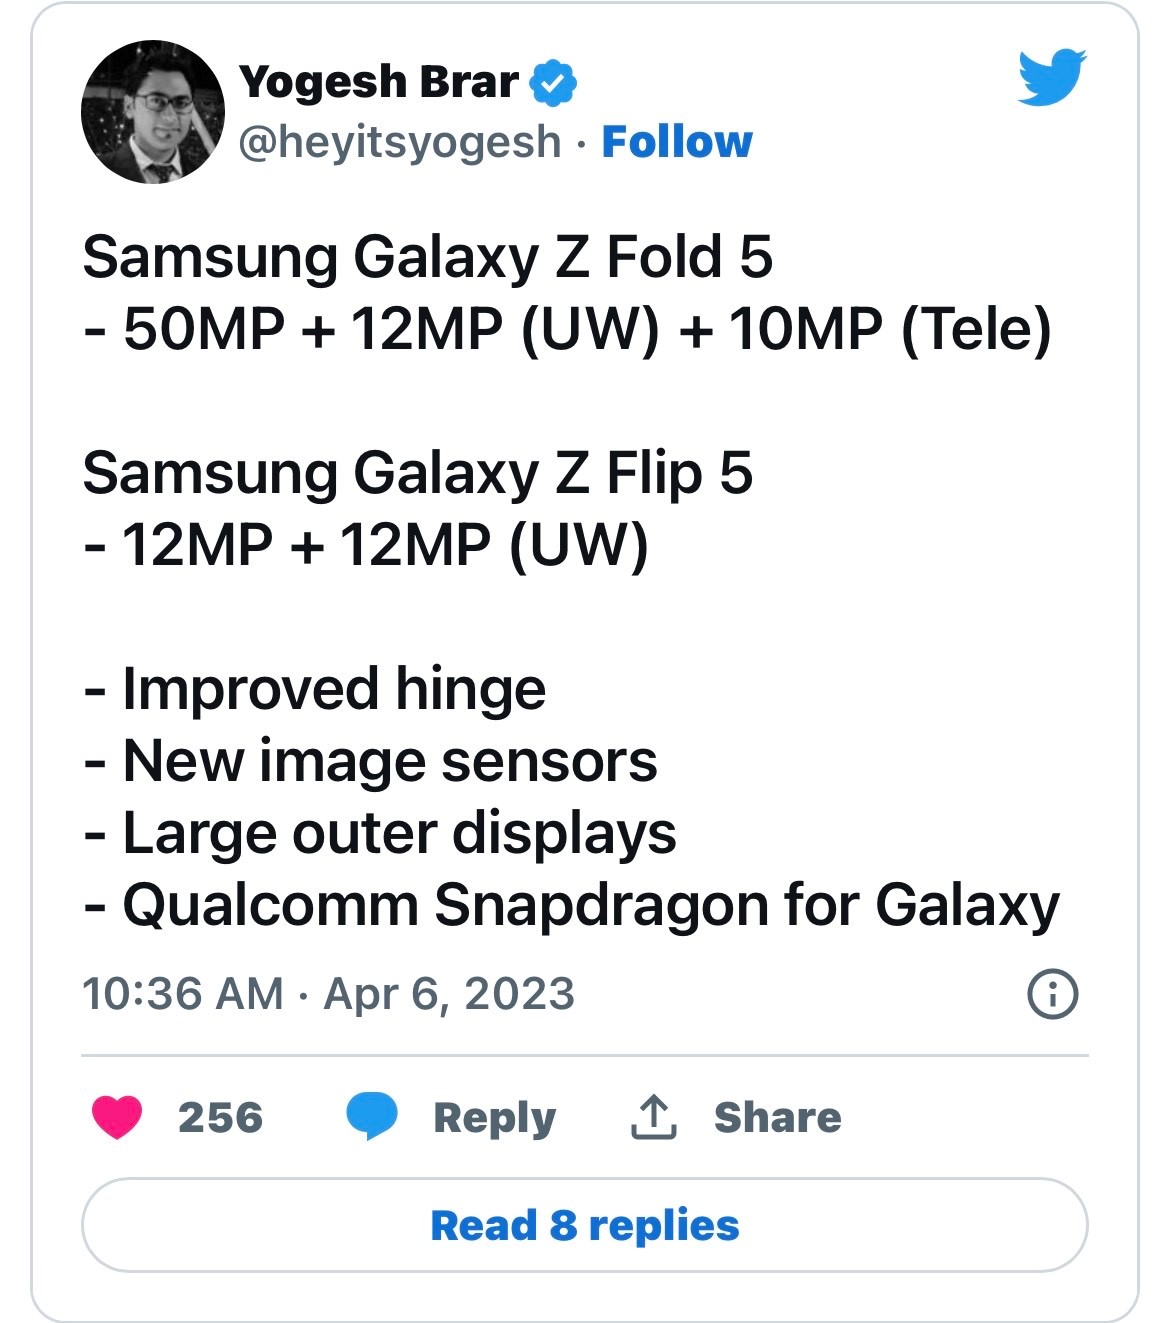 Samsung Galaxy Z Fold 5 and Z Flip 5